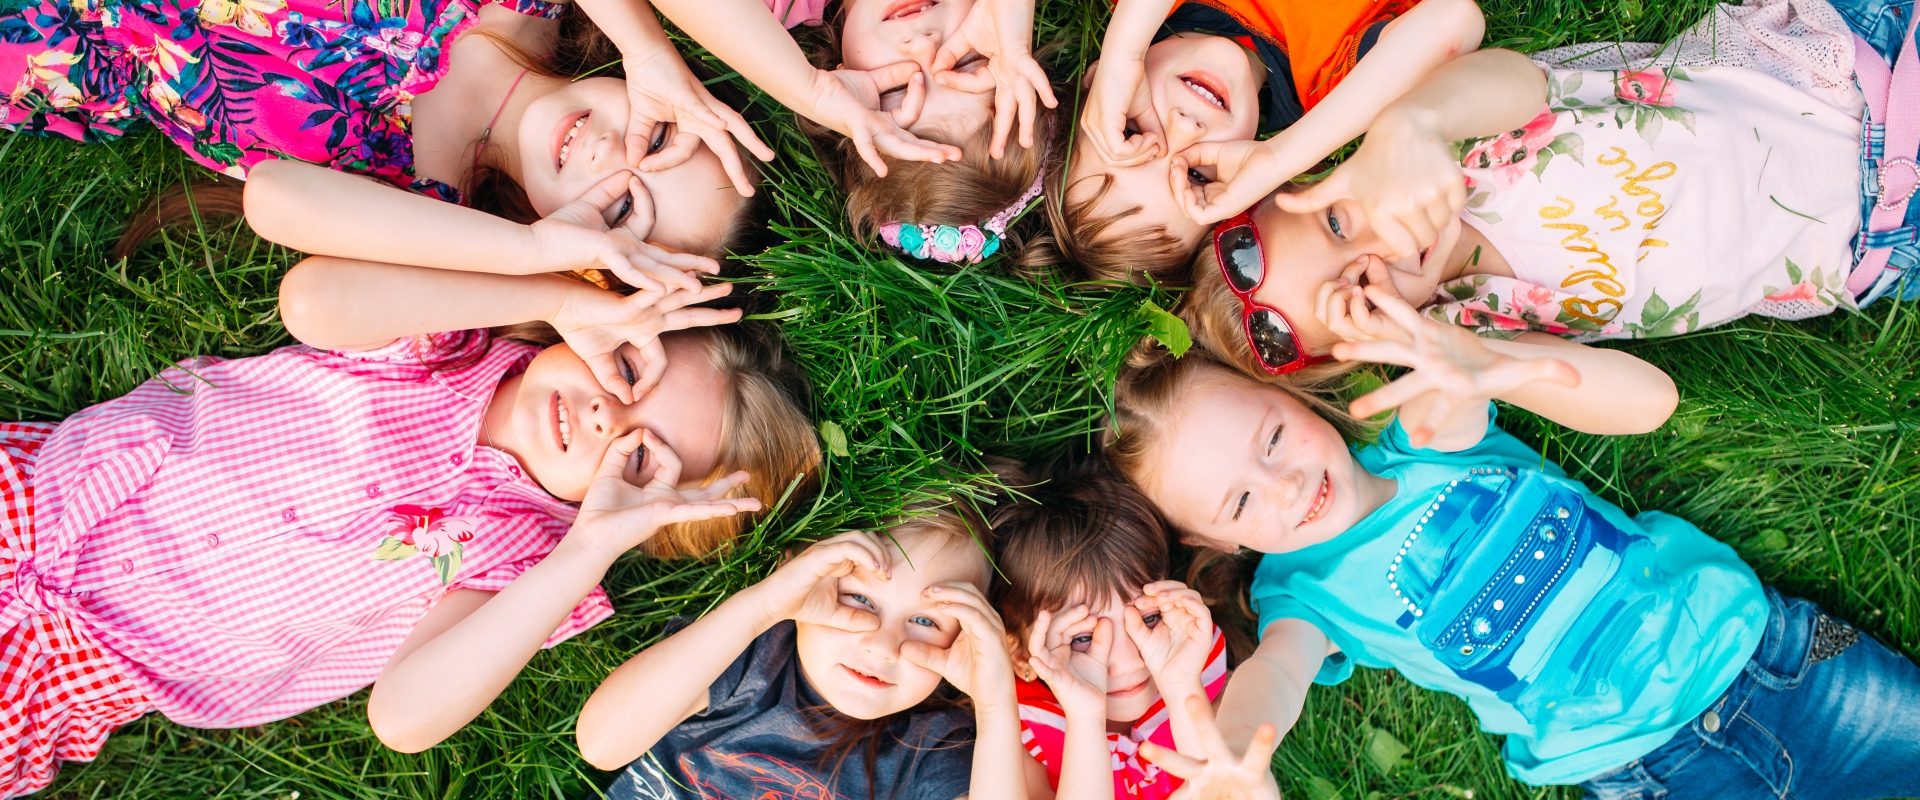 Mononukleoza zakaźna - jakie są jej objawy, przyczyny i jak ją leczyć. Grupa dzieci leżących na trawie w kółeczku i przykładających dłonie do oczu na kształt lornetki.